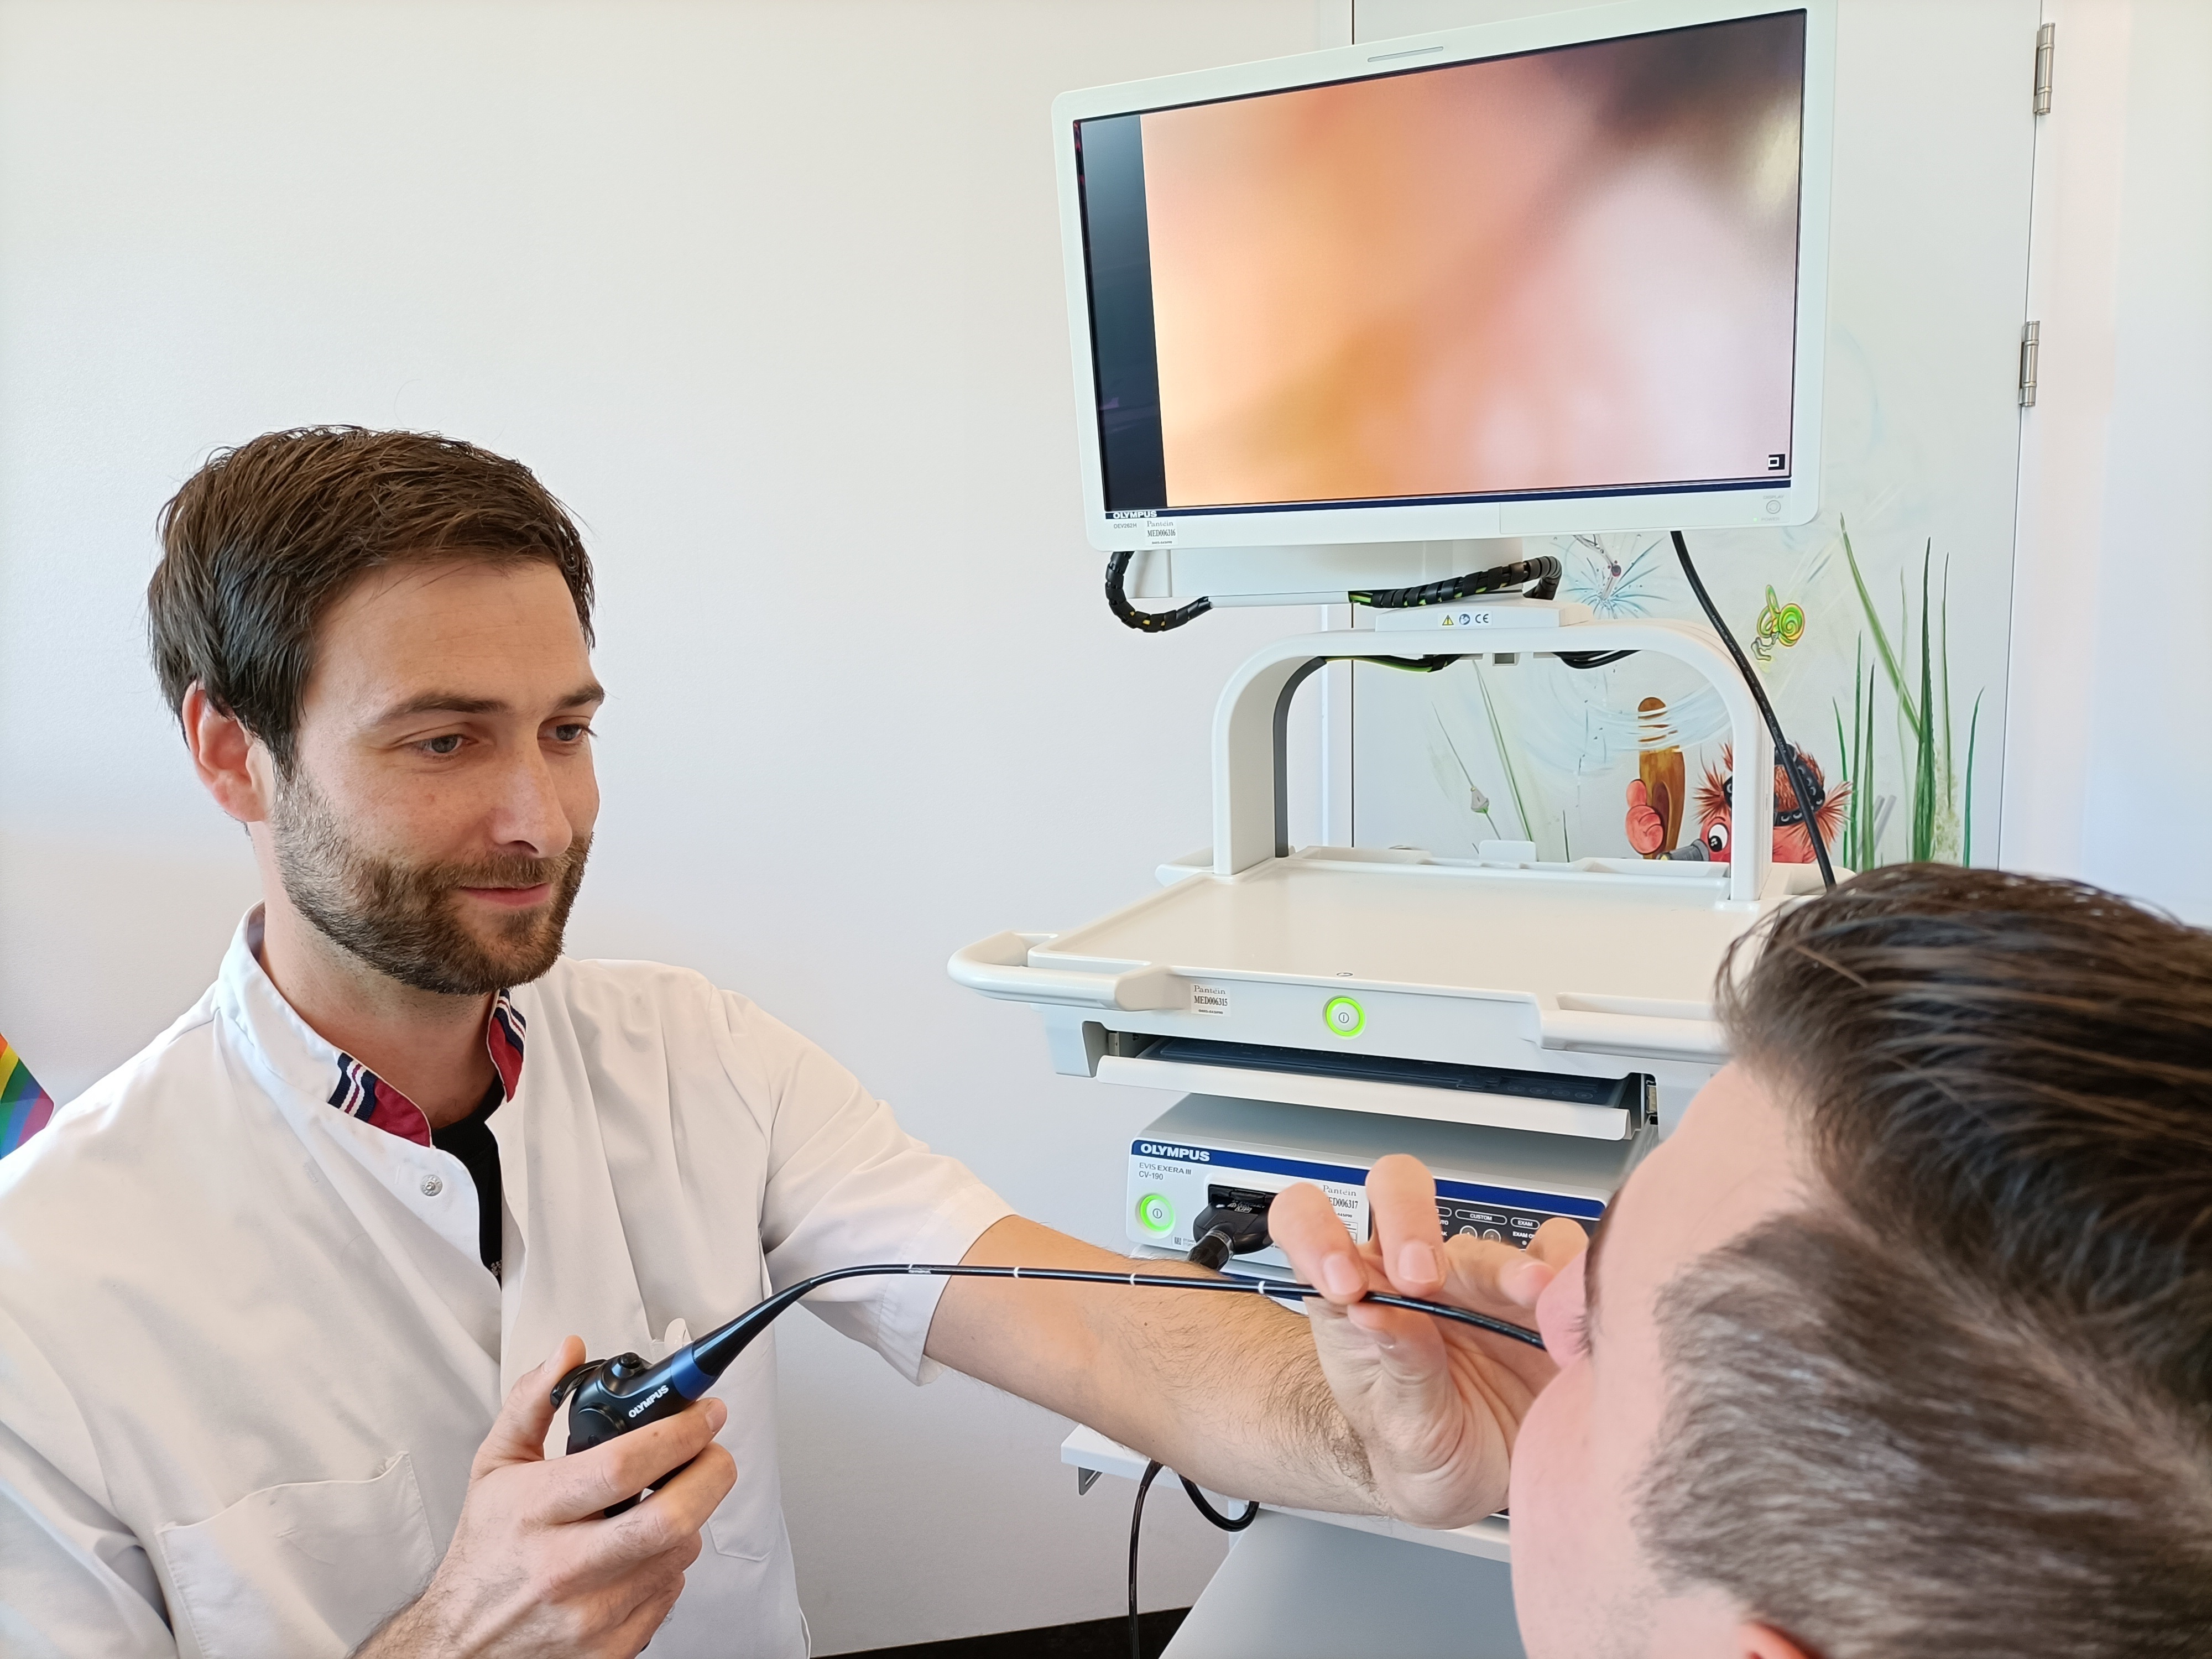  KNO-arts Michel van Hooren bekijkt via de neus met een minuscuul cameraatje de stembanden op een beeldscherm